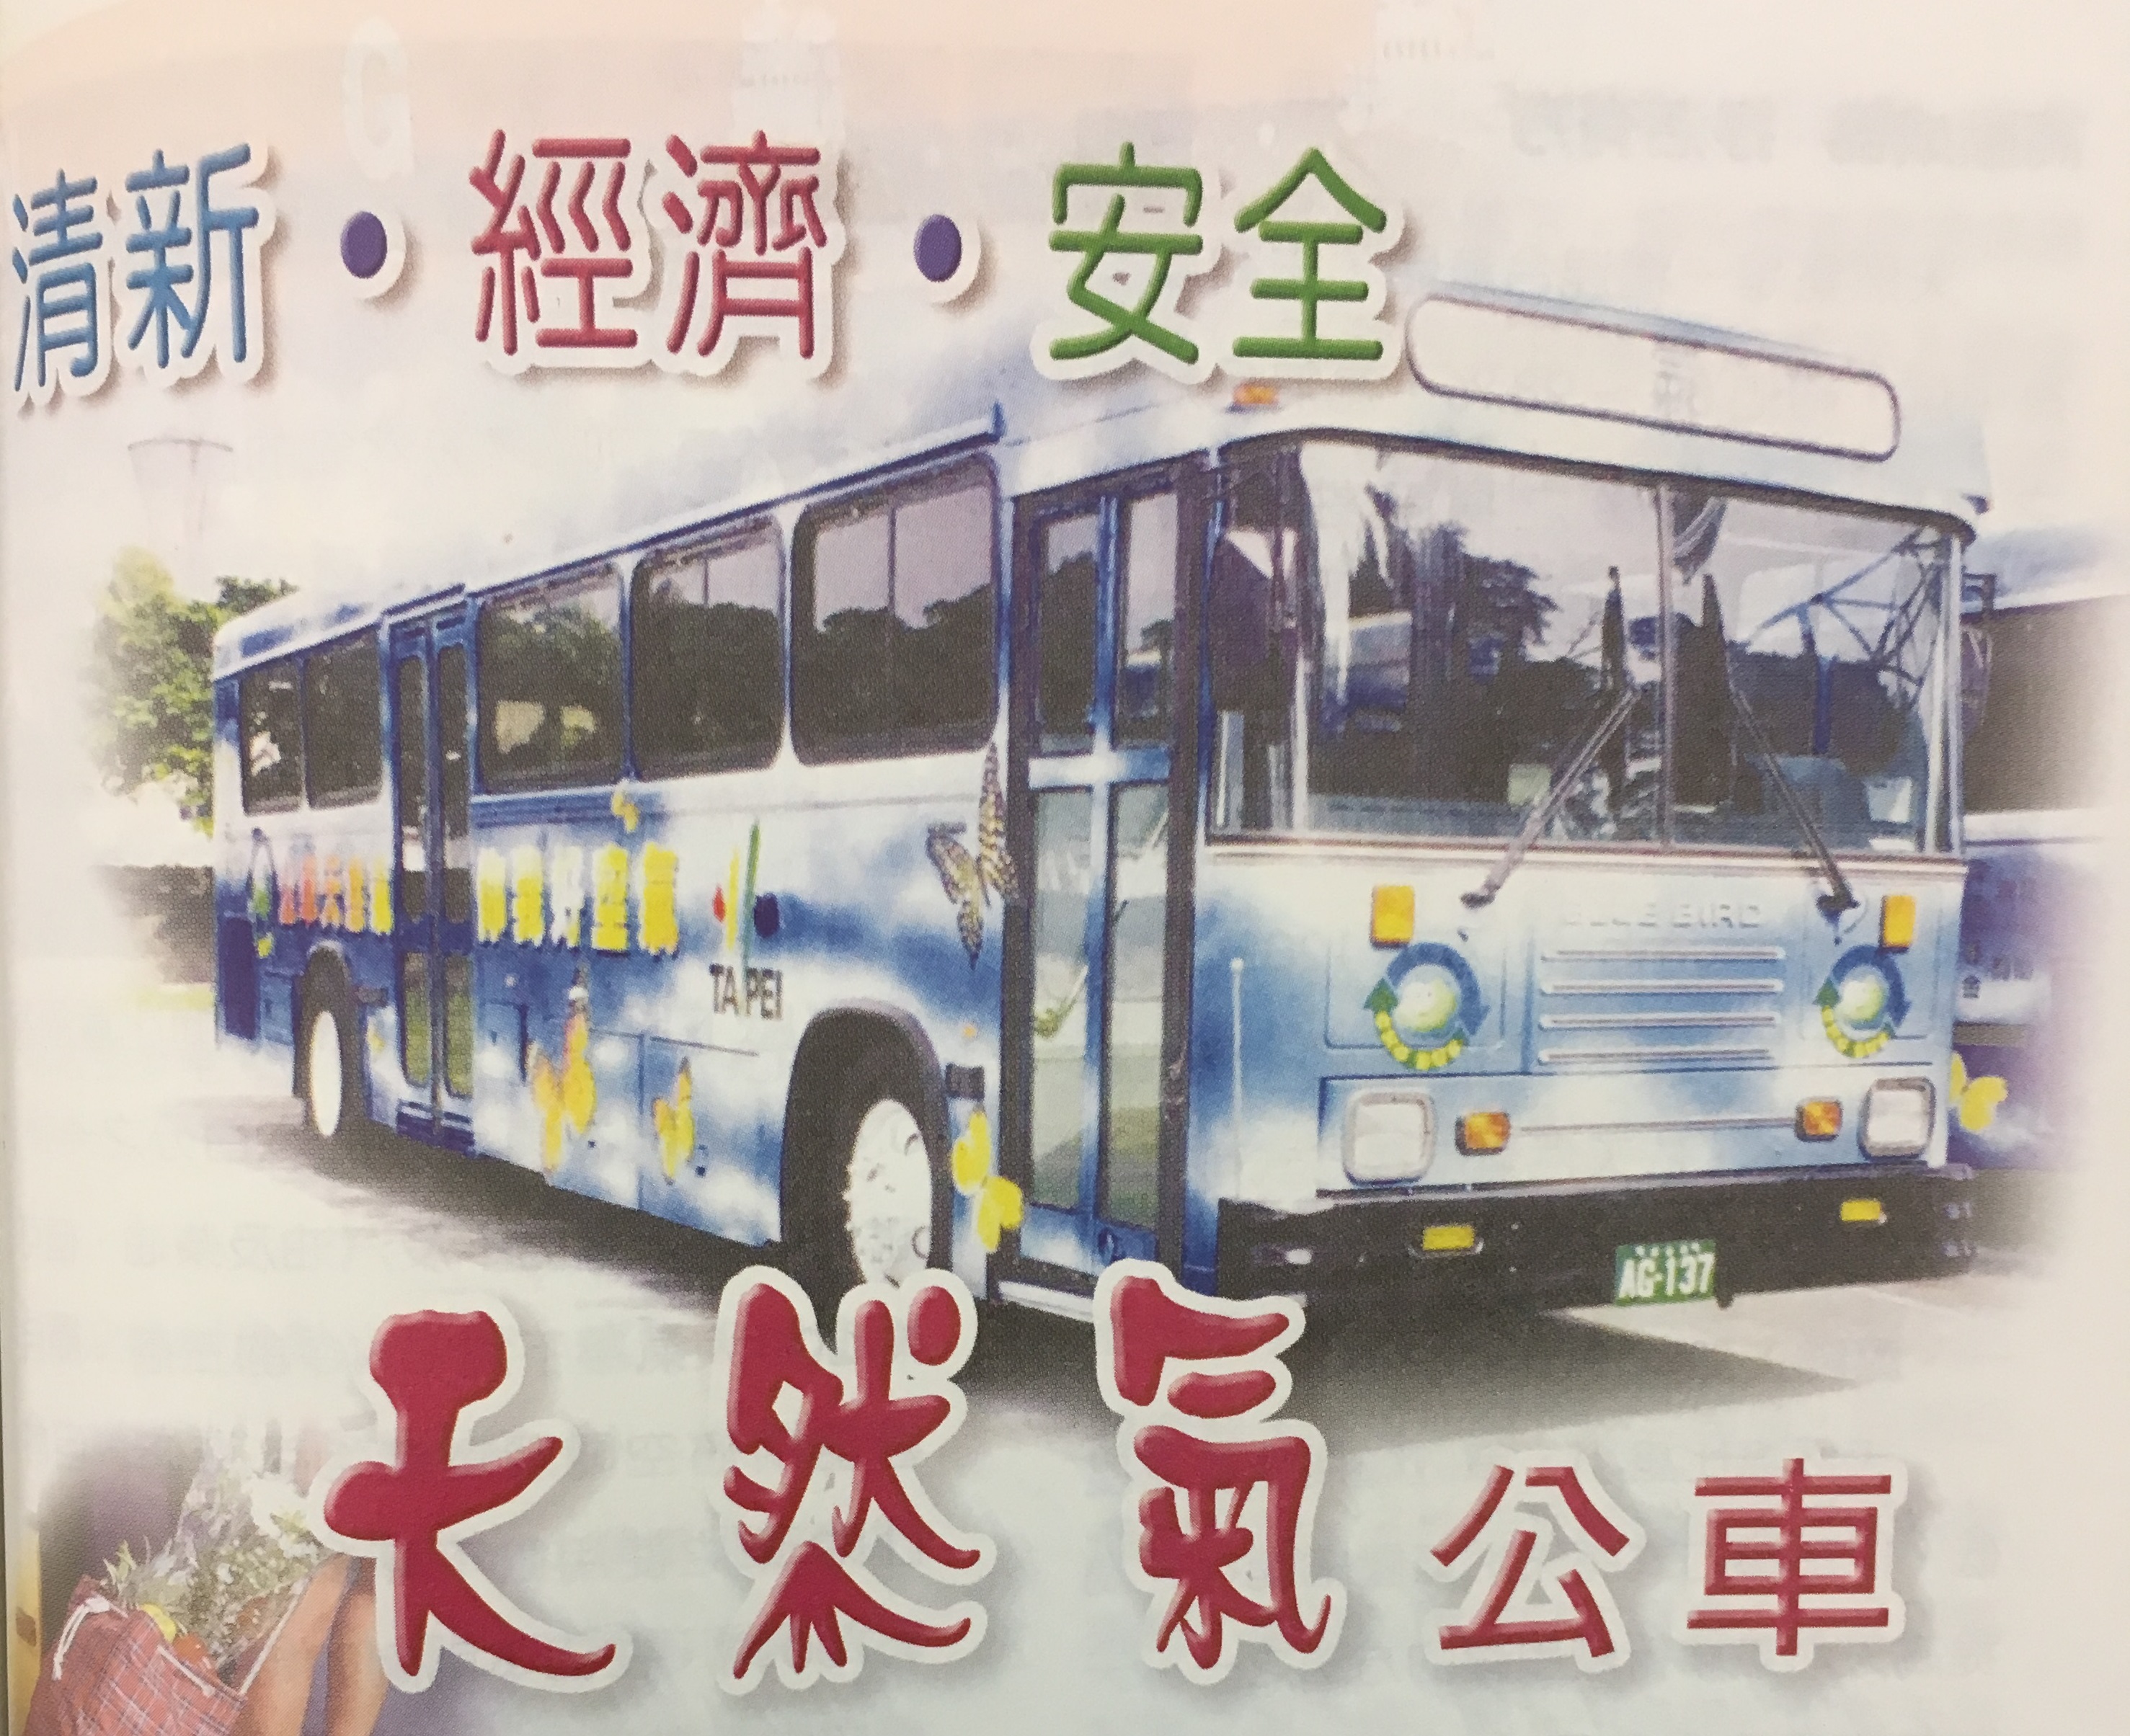 清新˙經濟˙安全──天然氣公車